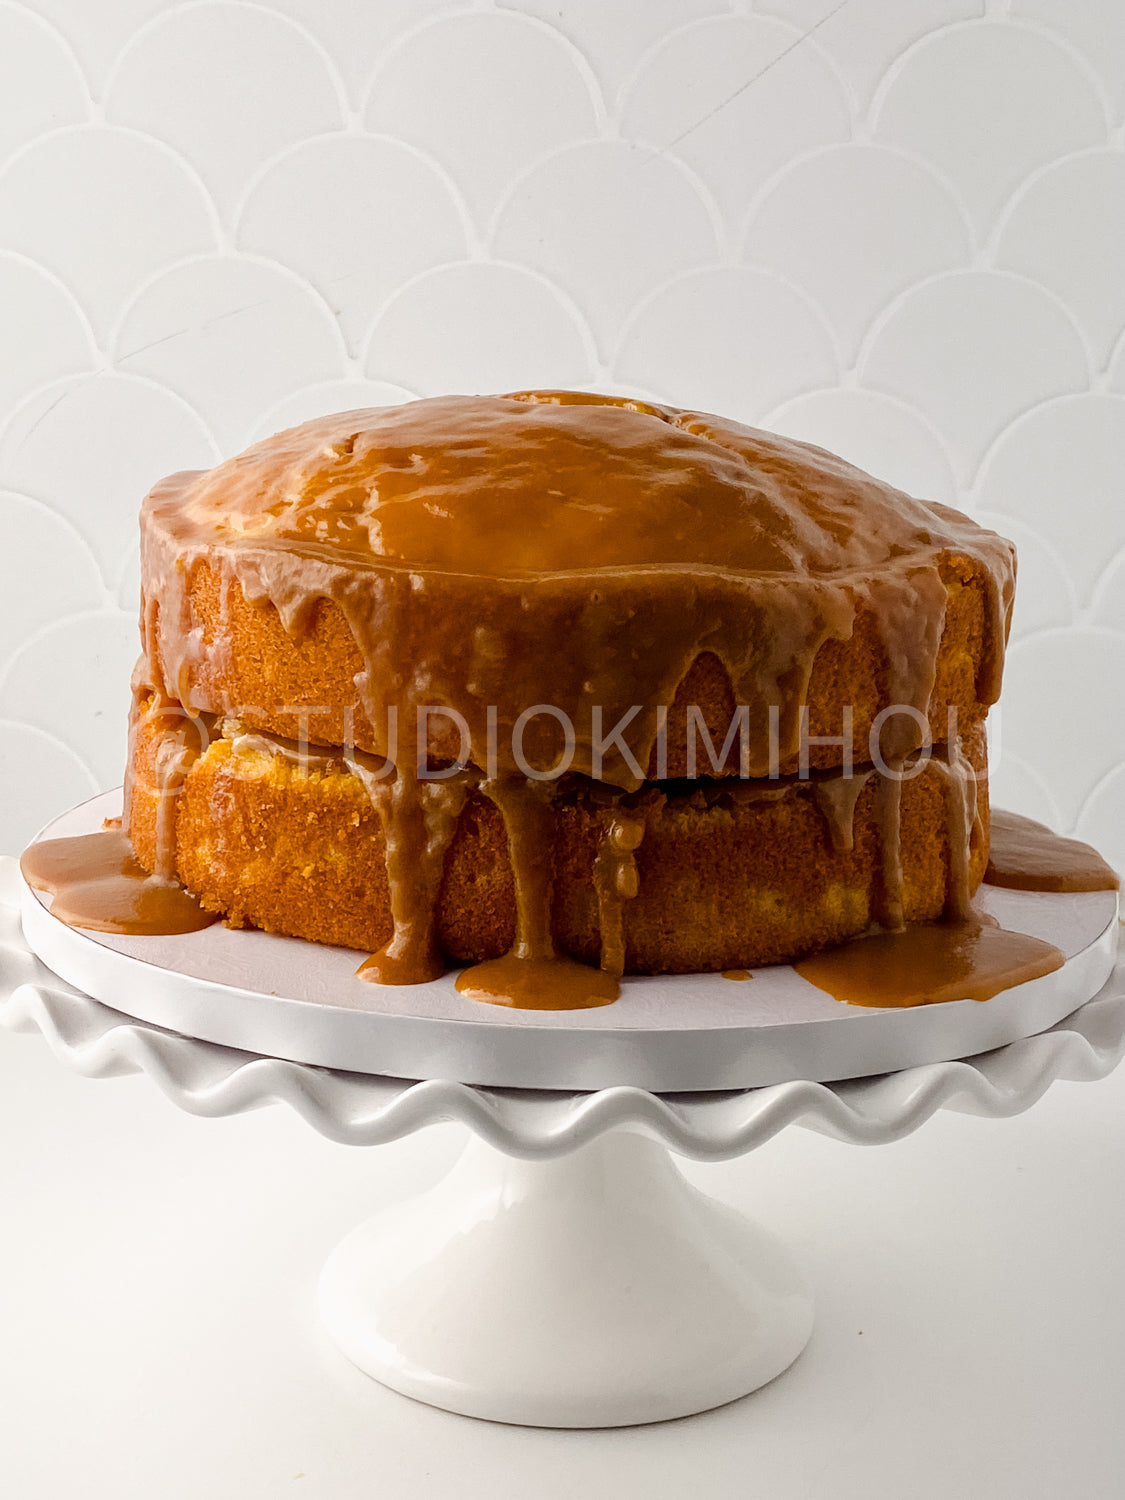 PLR - Salted Caramel Butter Cake